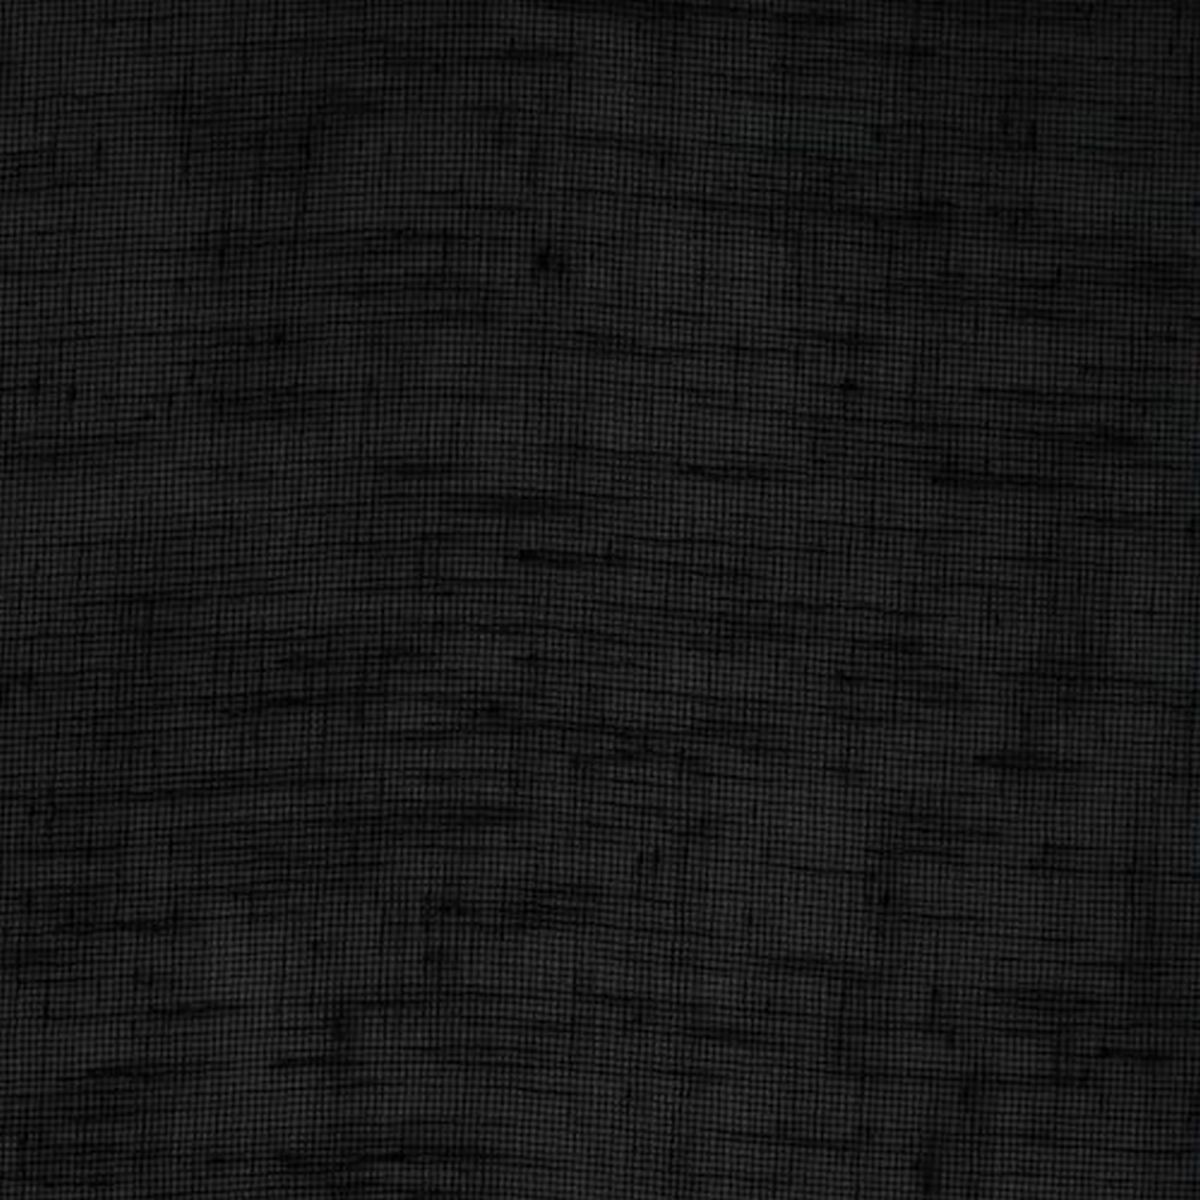 Chantilly Black Fabric by Chatham Glyn